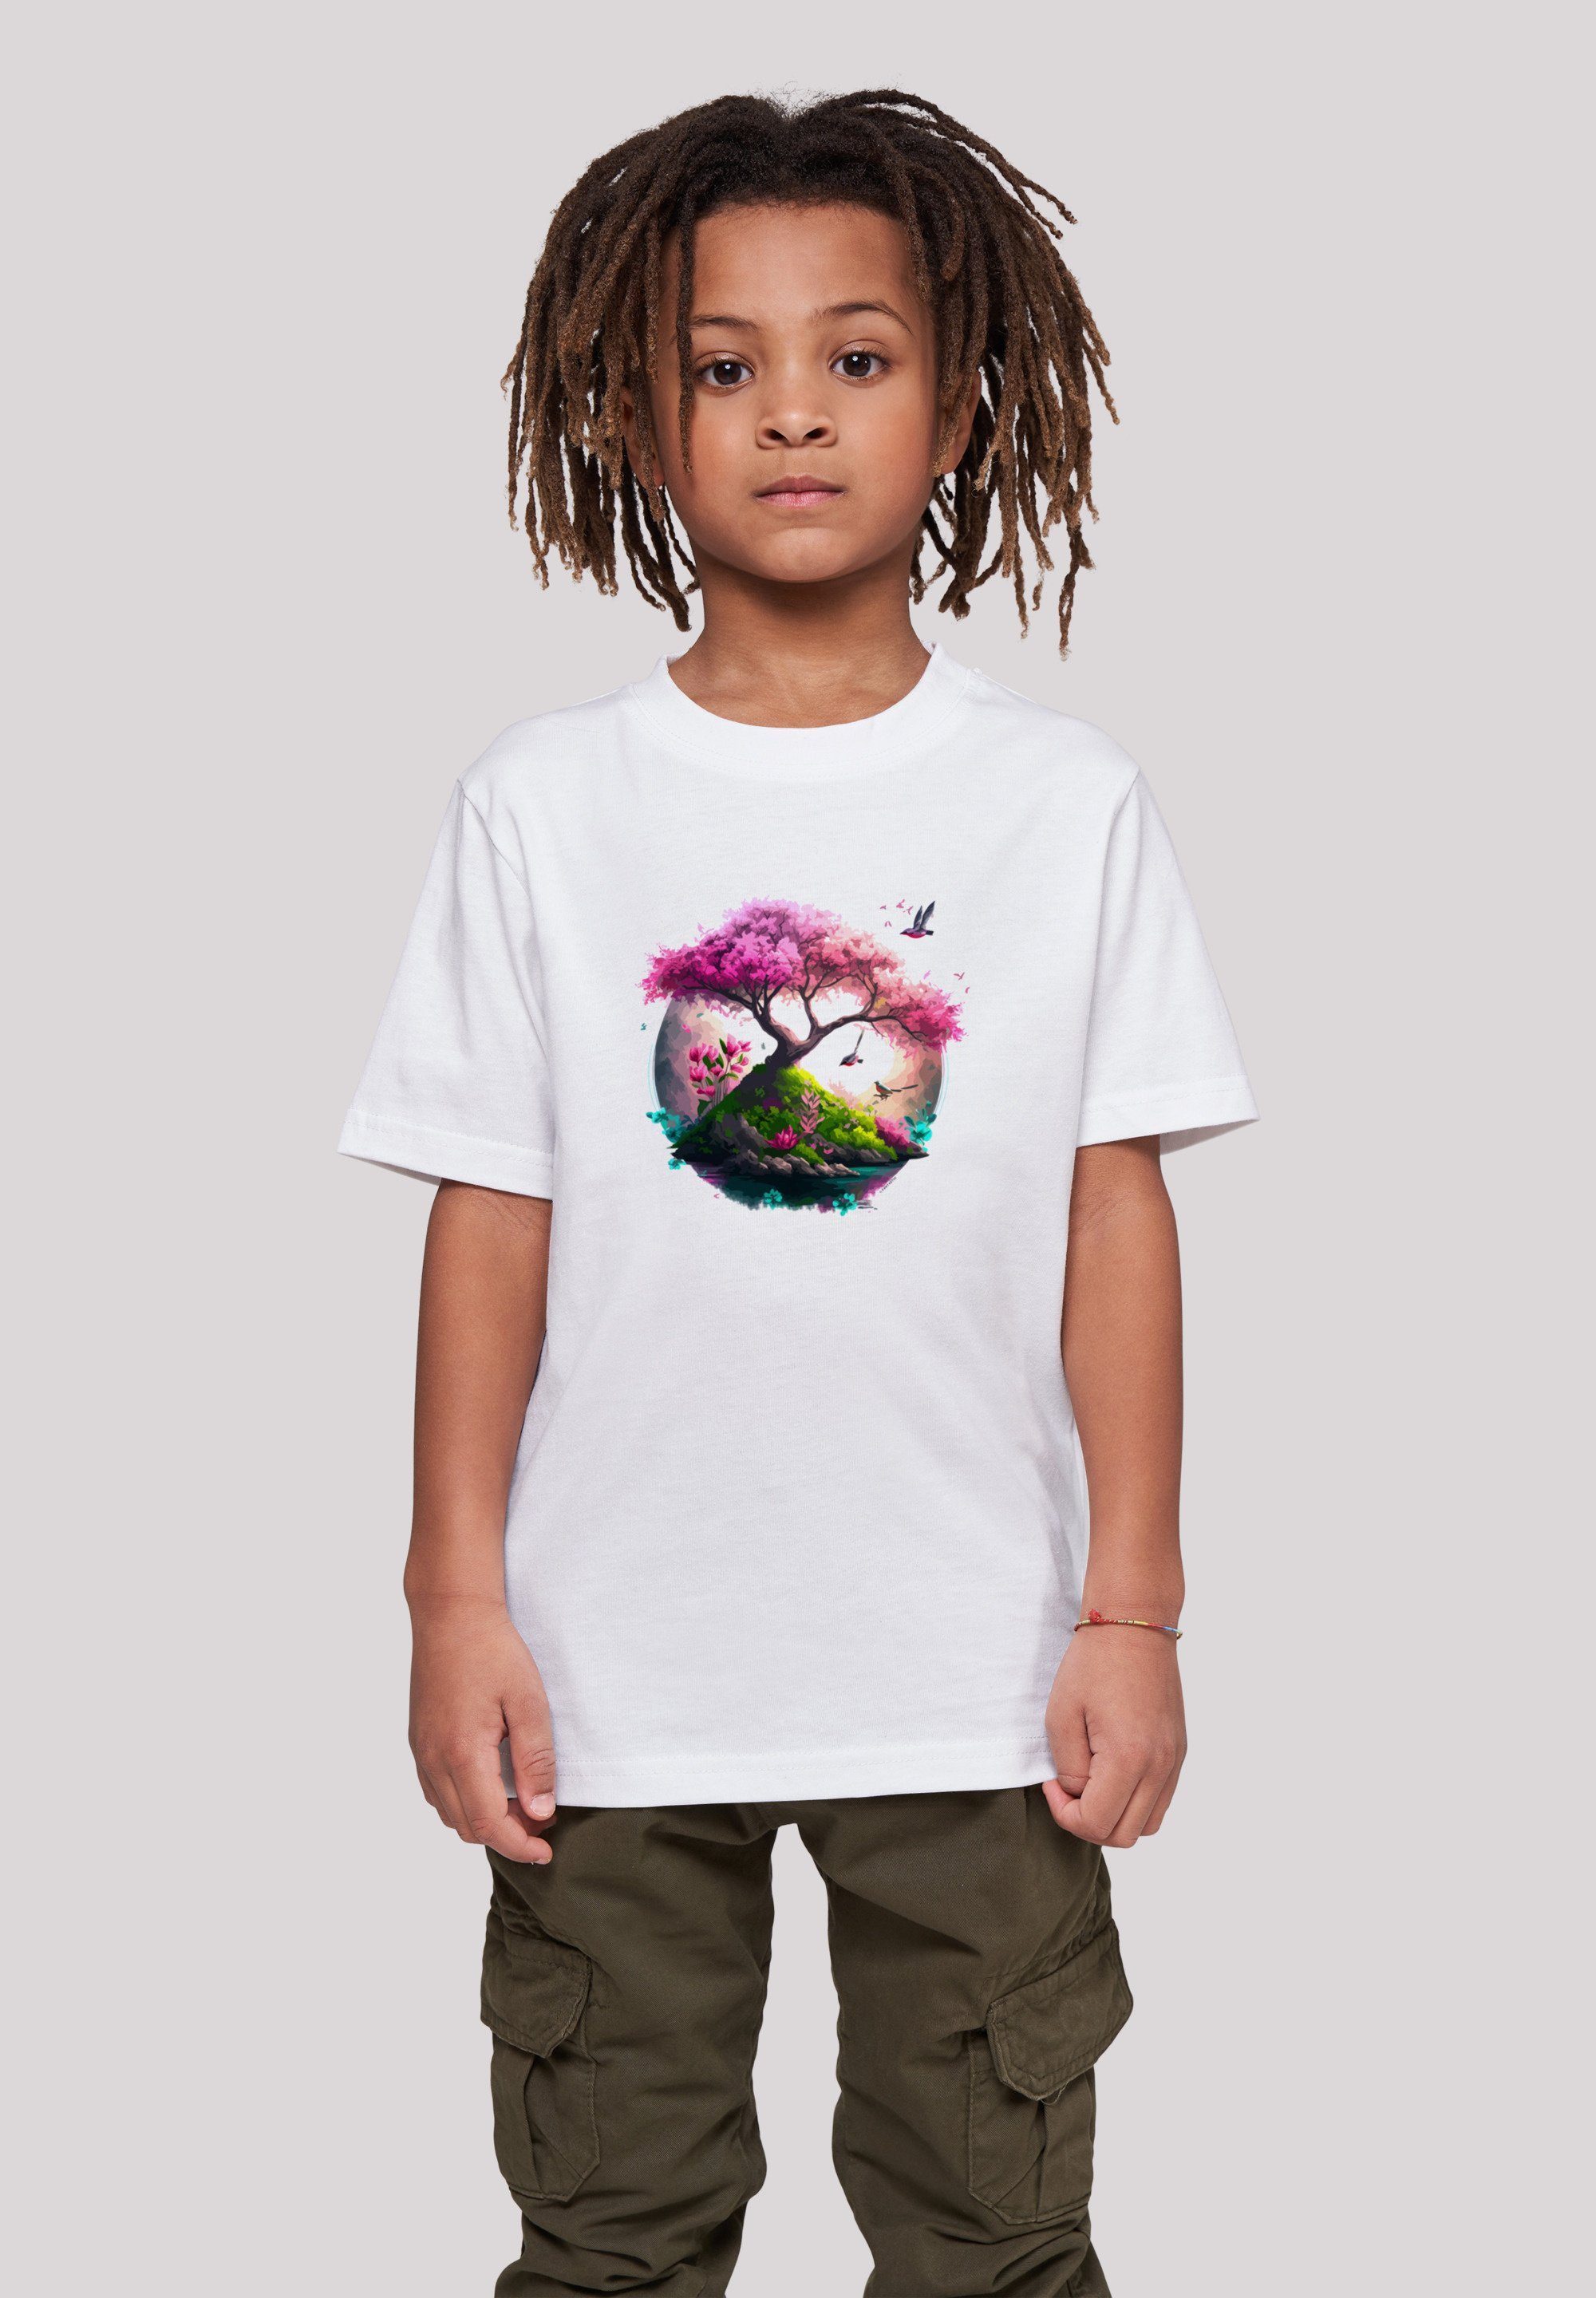 F4NT4STIC T-Shirt Kirschblüten Baum Print Tee Unisex weiß